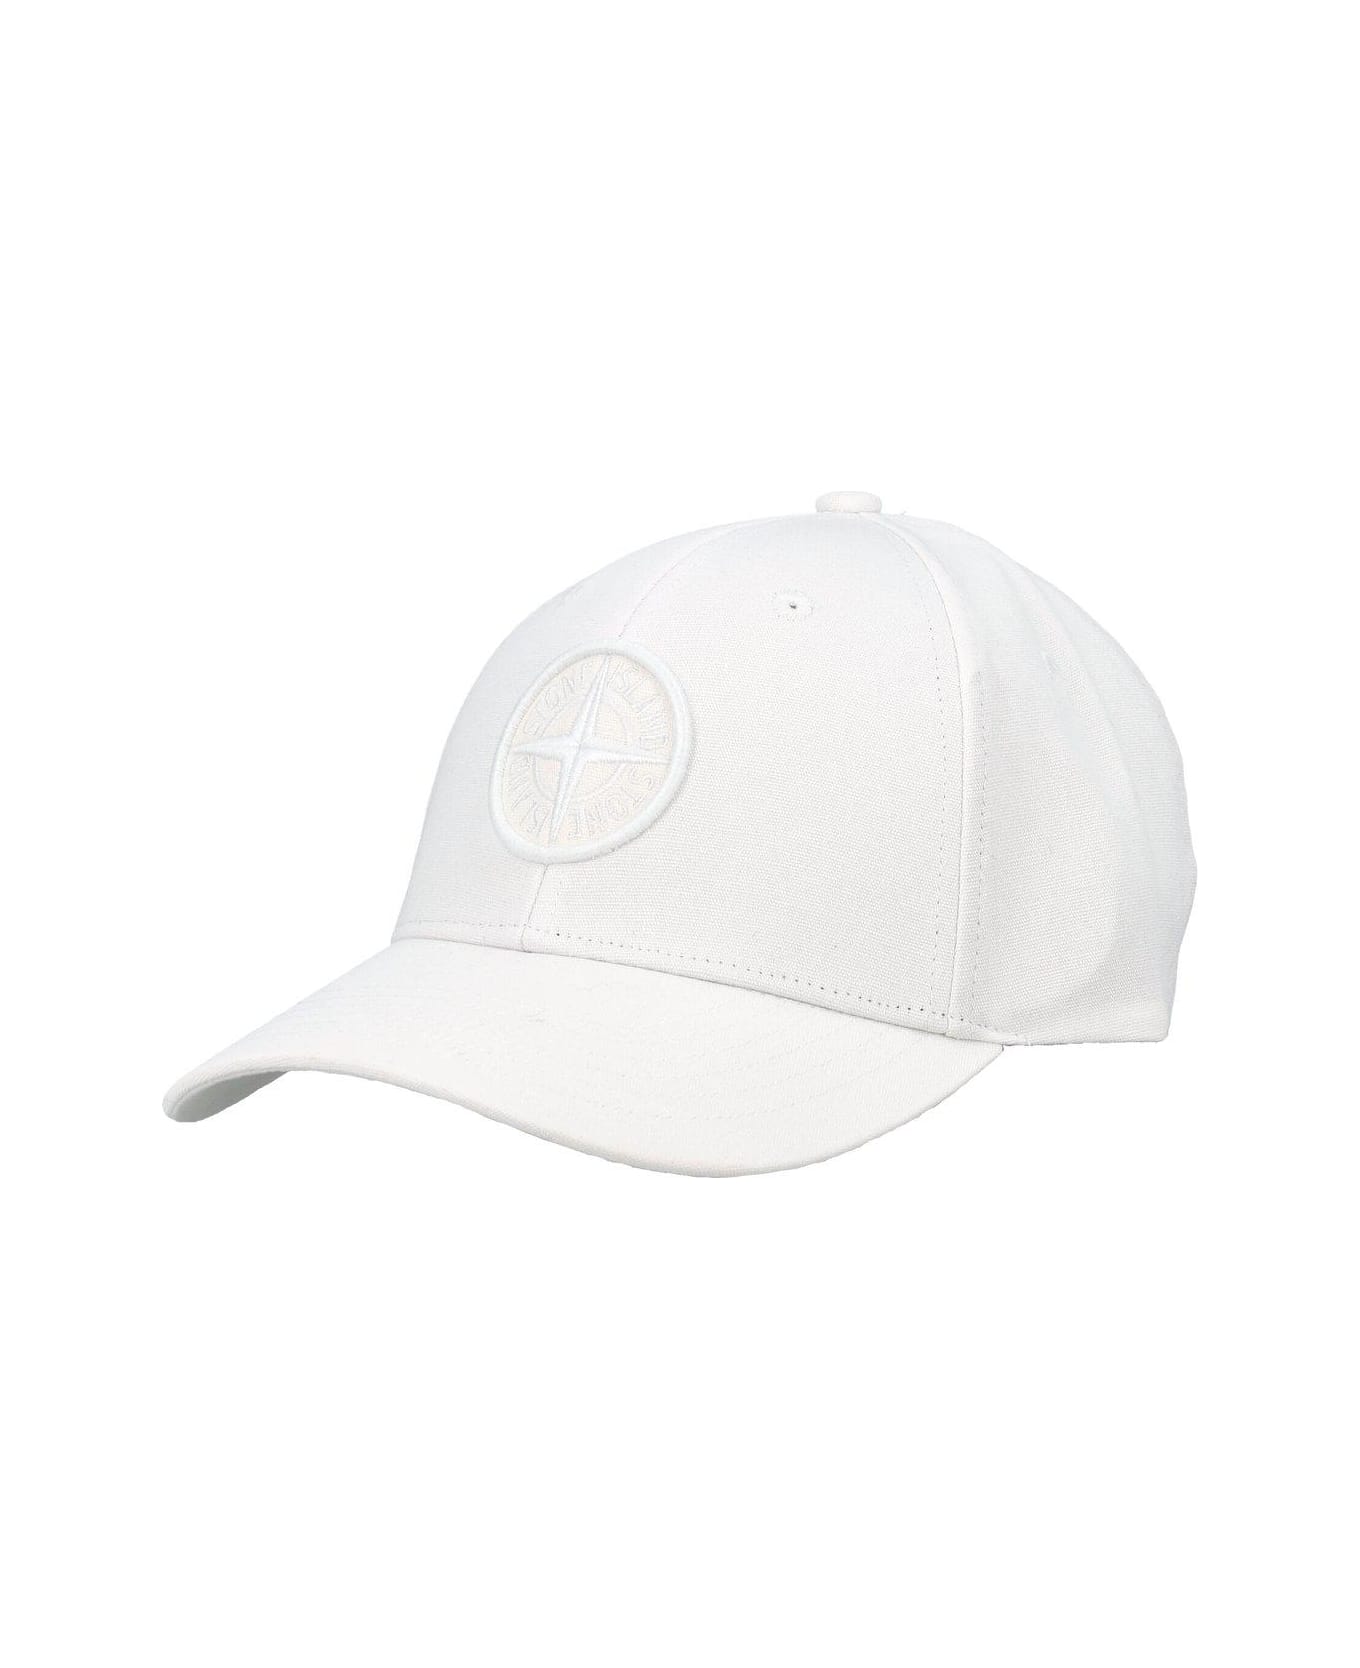 Stone Island Baseball Cap - White 帽子